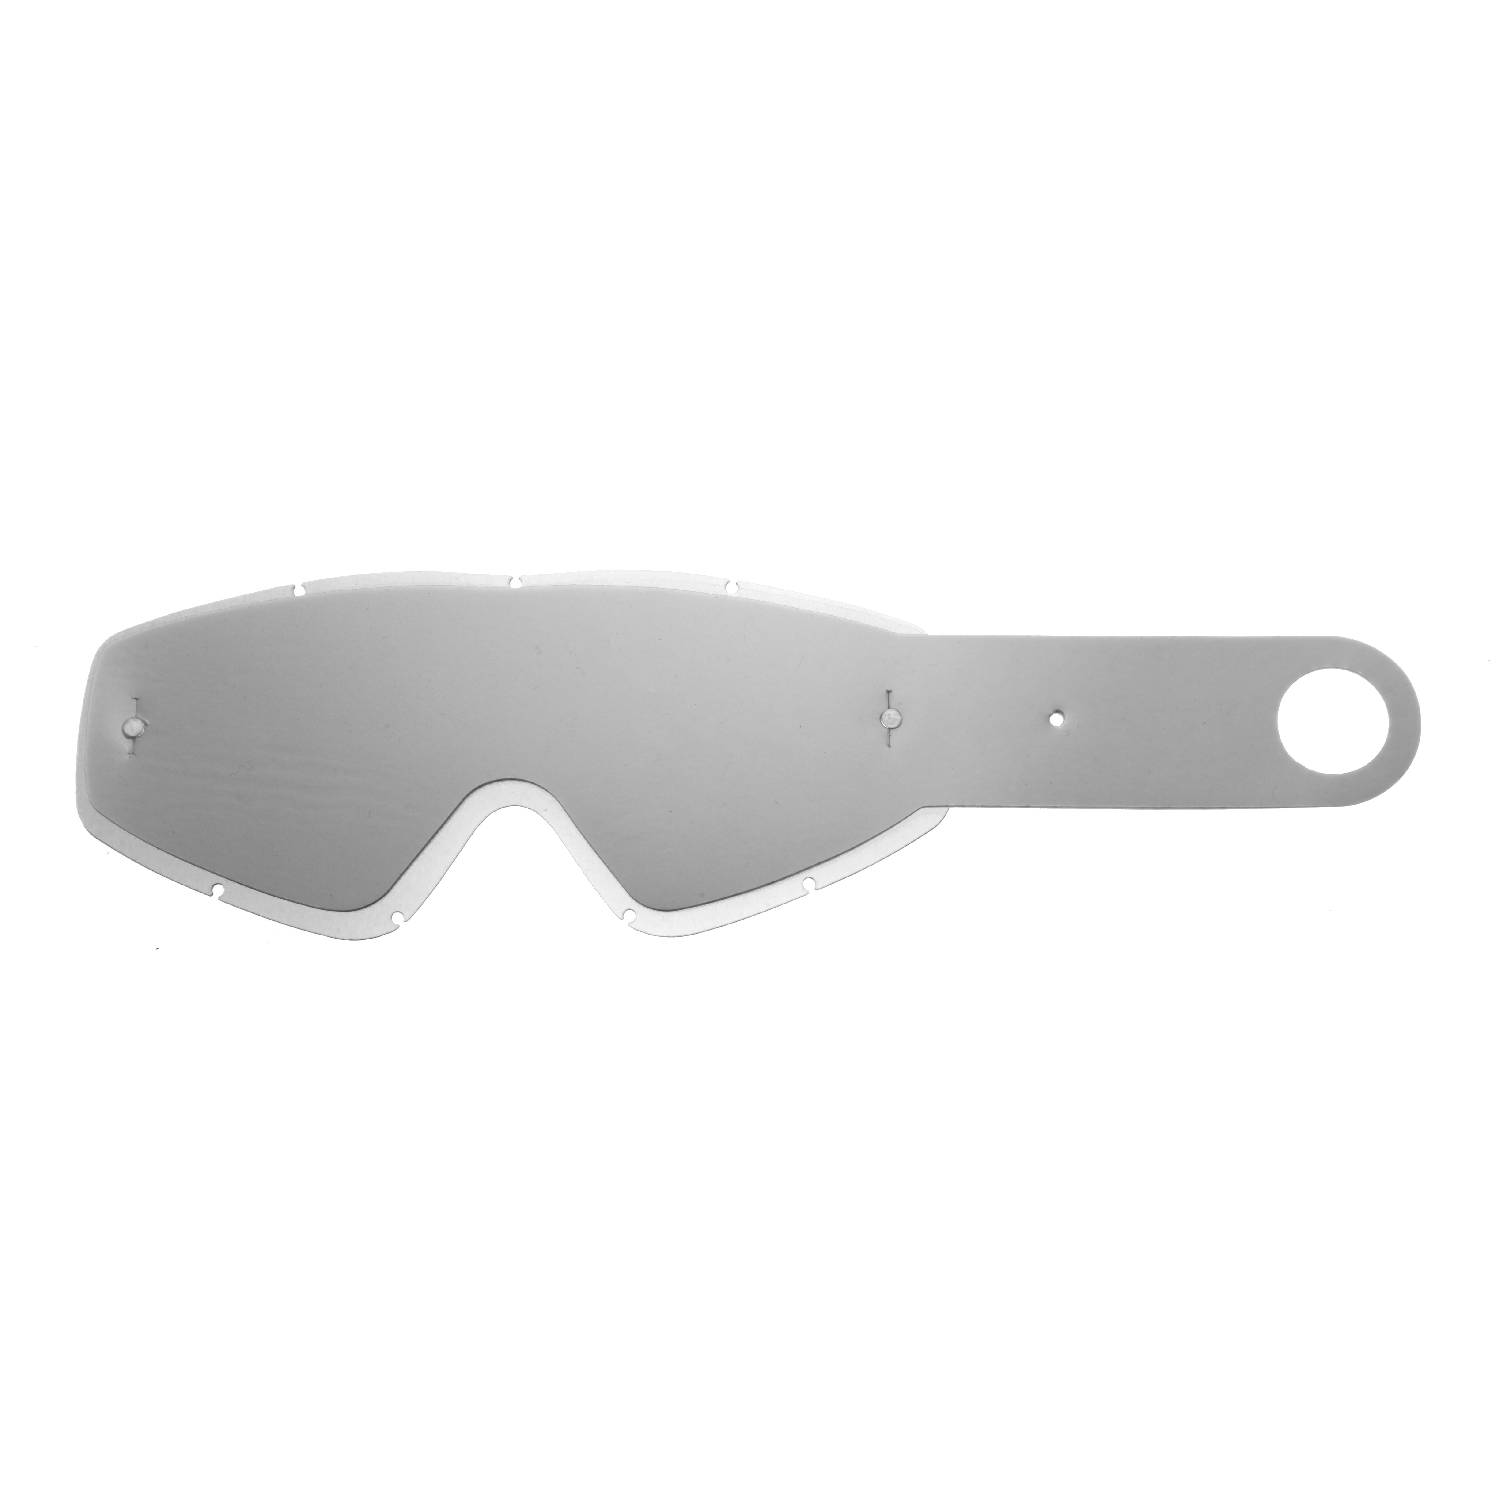 Lente trasparente + 10 Strappi (Combo) compatibile per occhiale/maschera per maschera Eks